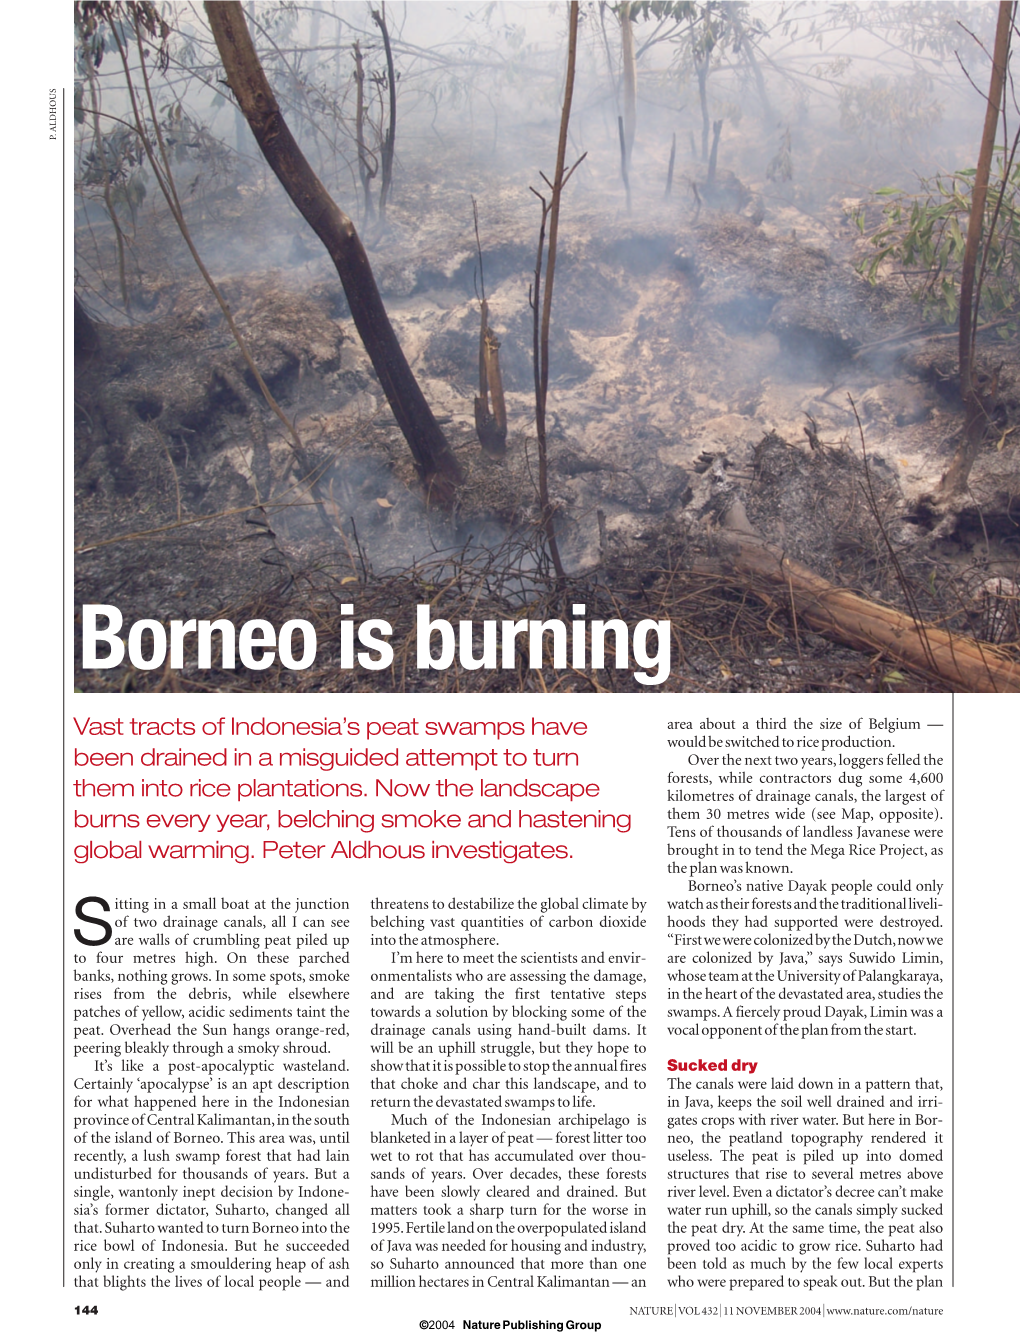 Borneo Is Burning